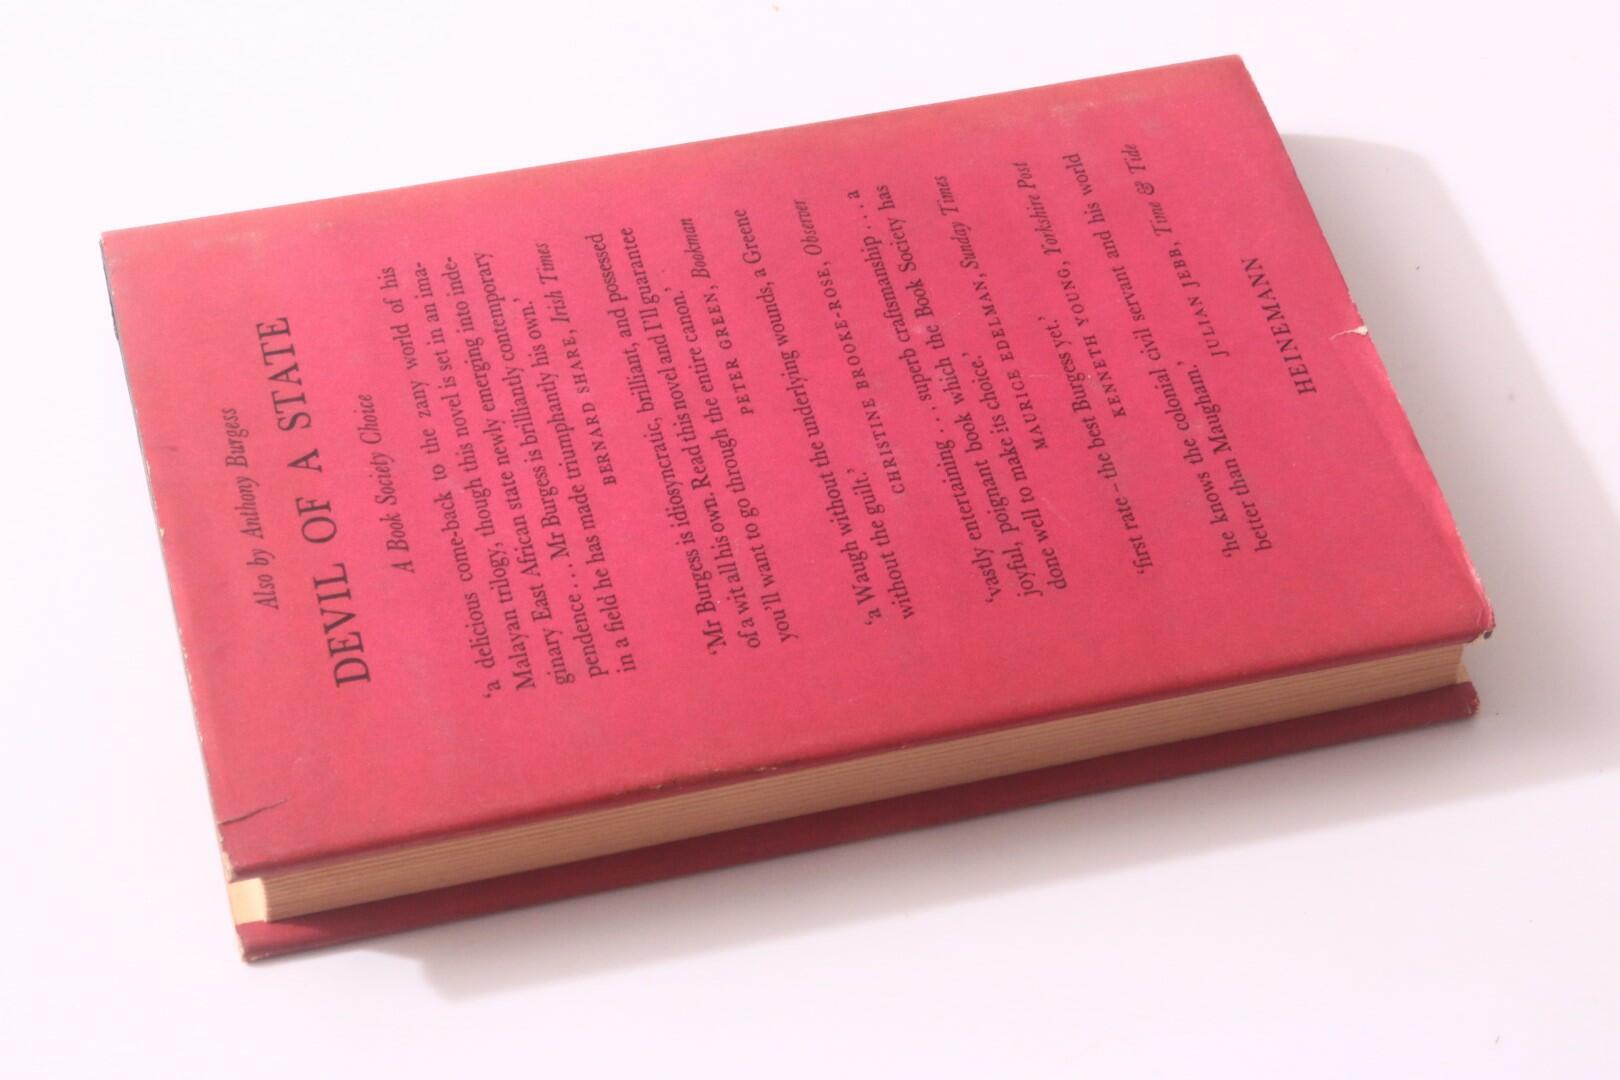 Anthony Burgess - A Clockwork Orange - Heinemann, 1962, First Edition.